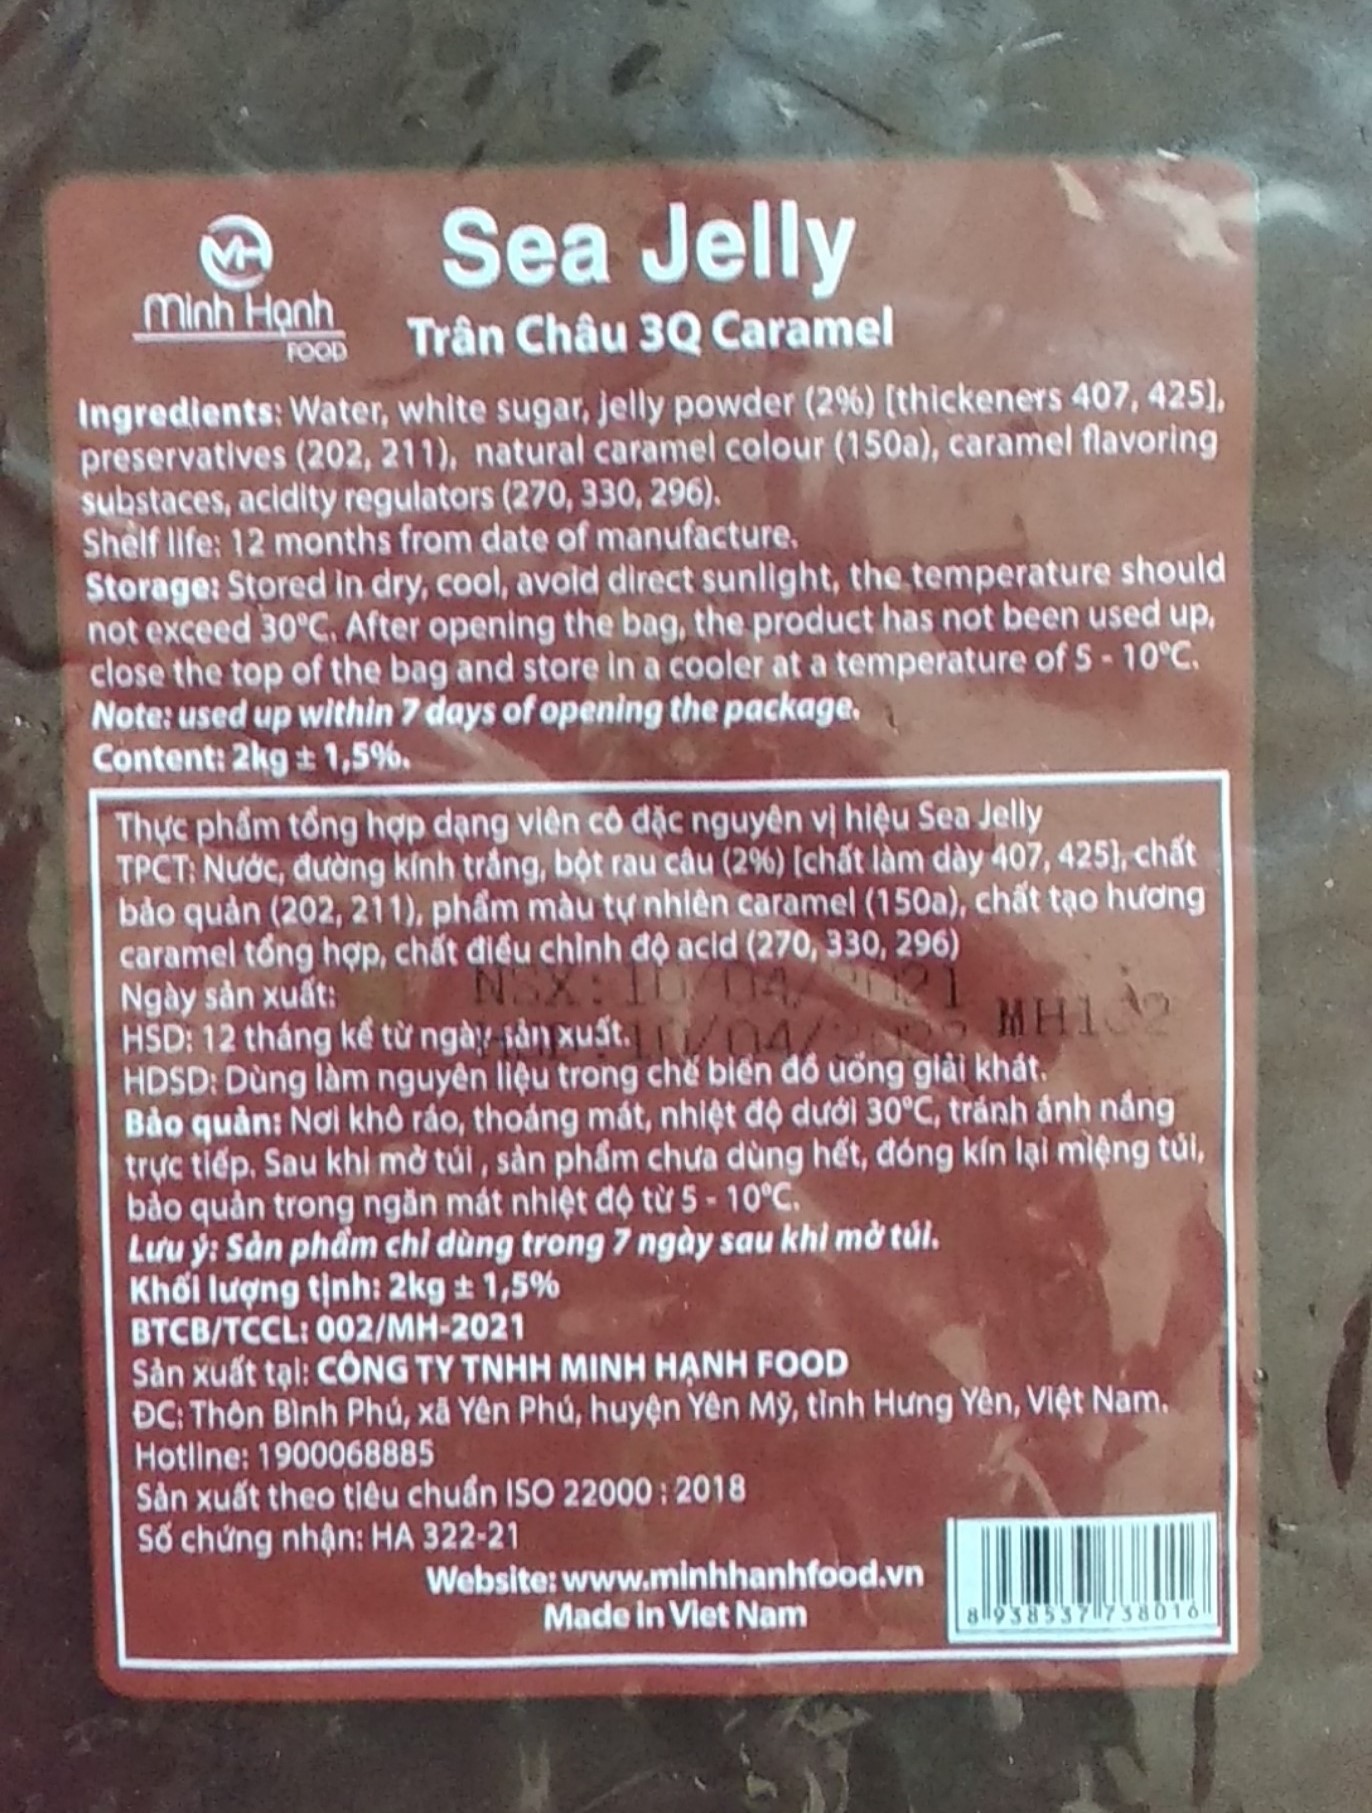 Trân Châu 3Q Sea Jelly Caramel 2 kg / Thạch 3Q Caramel Sea Jelly Đường Đen (ngon, dai giòn sần sật - dùng trực tiếp mà không cần nấu hay chế biến khác)